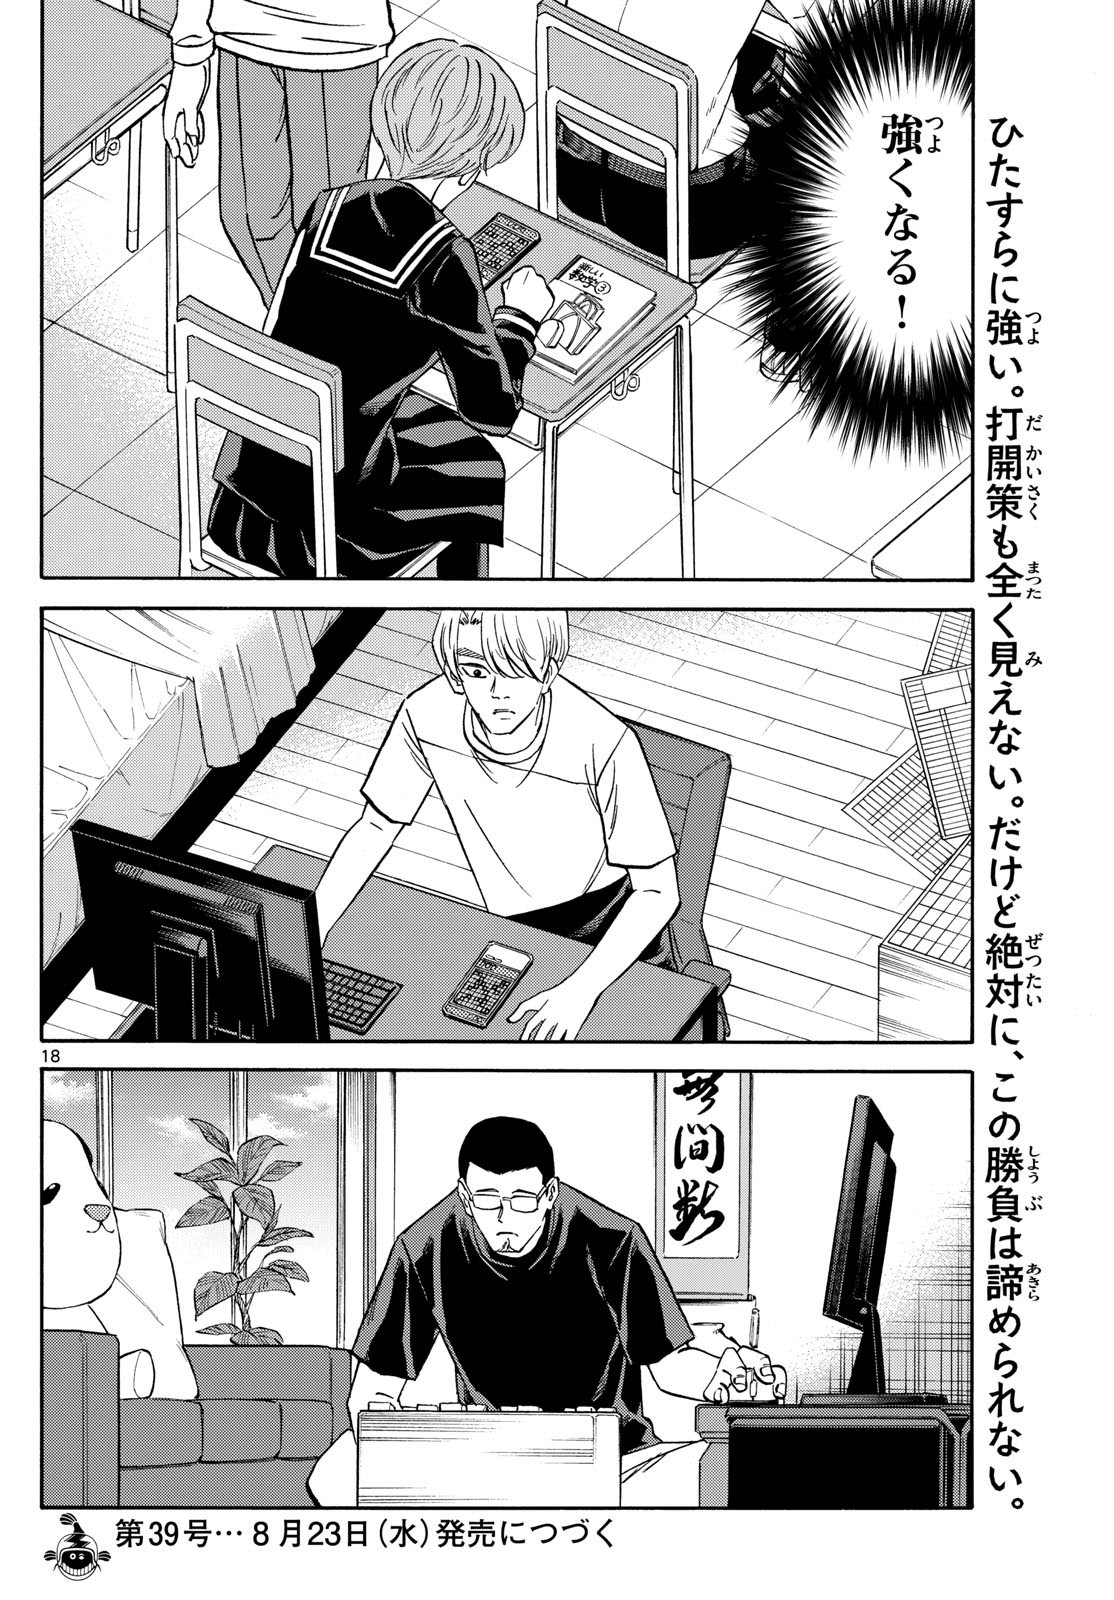 Ryu-to-Ichigo - Chapter 155 - Page 18